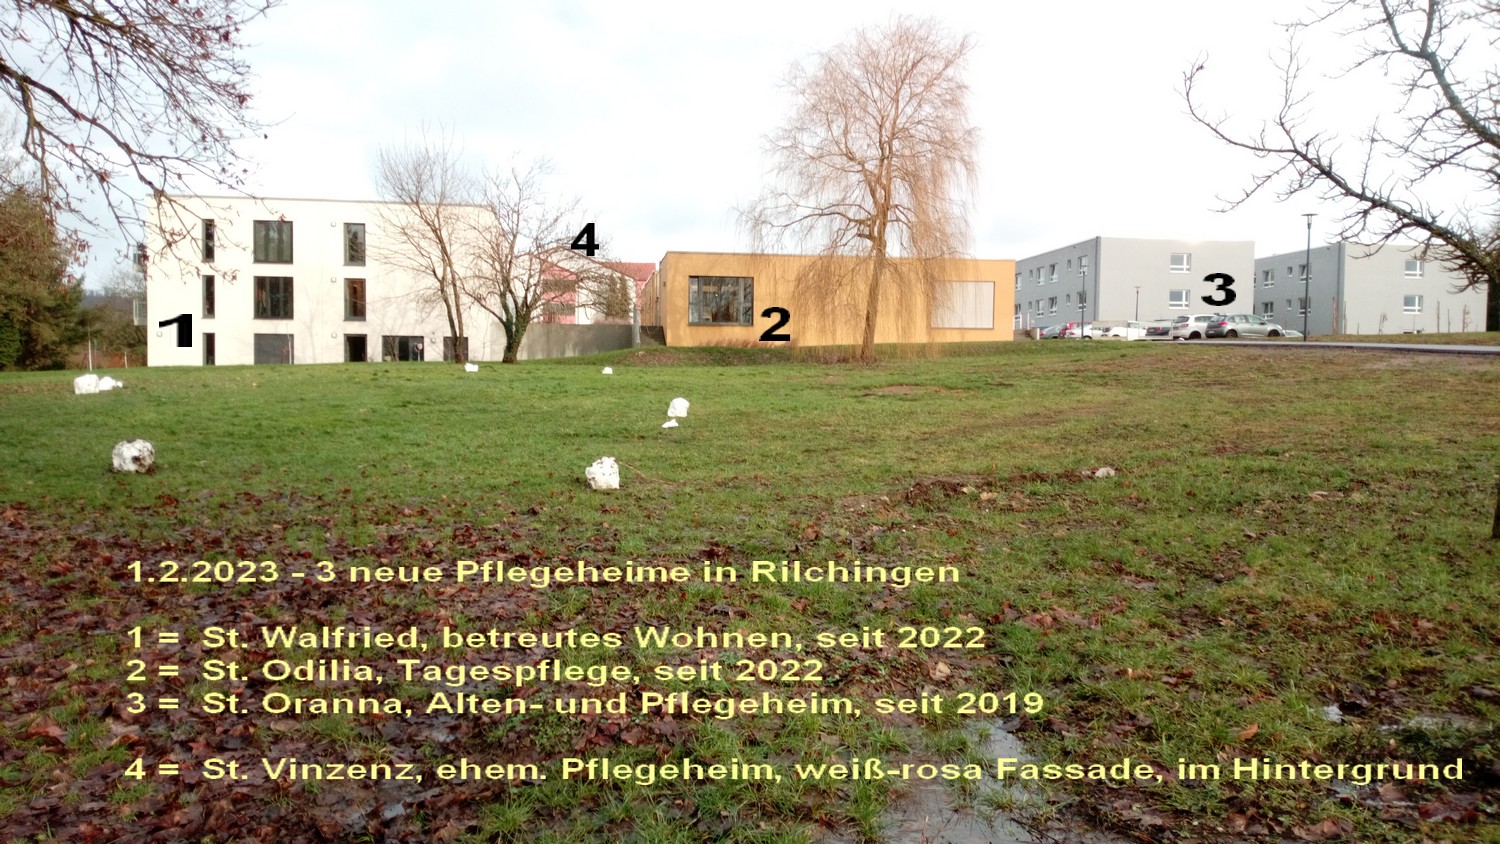 seit 2019 und 2022,neue Heime in Rilchingen; Betreutes Wohnen St.Walfried und Tagespflege St.Odilia,2022, Pflegeheim St.Oranna, 2019